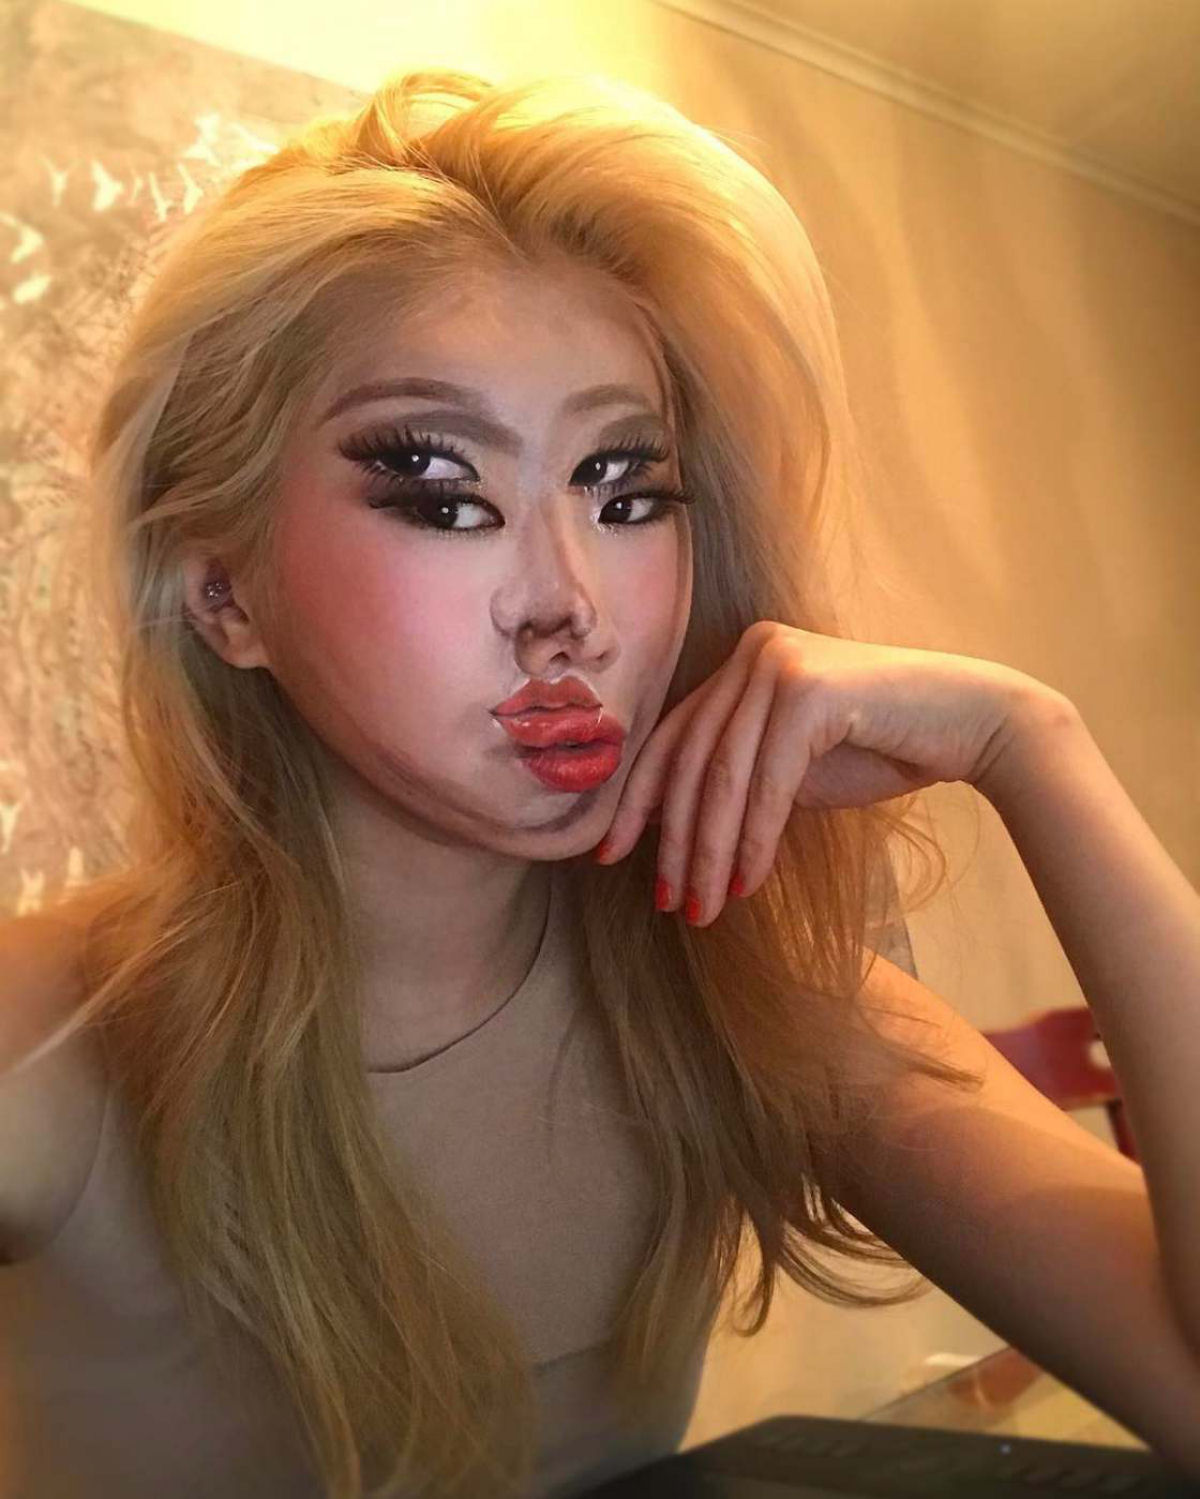 Artista sul-coreana usa maquiagem para transformar sua face em iluses pticas fascinantes 11